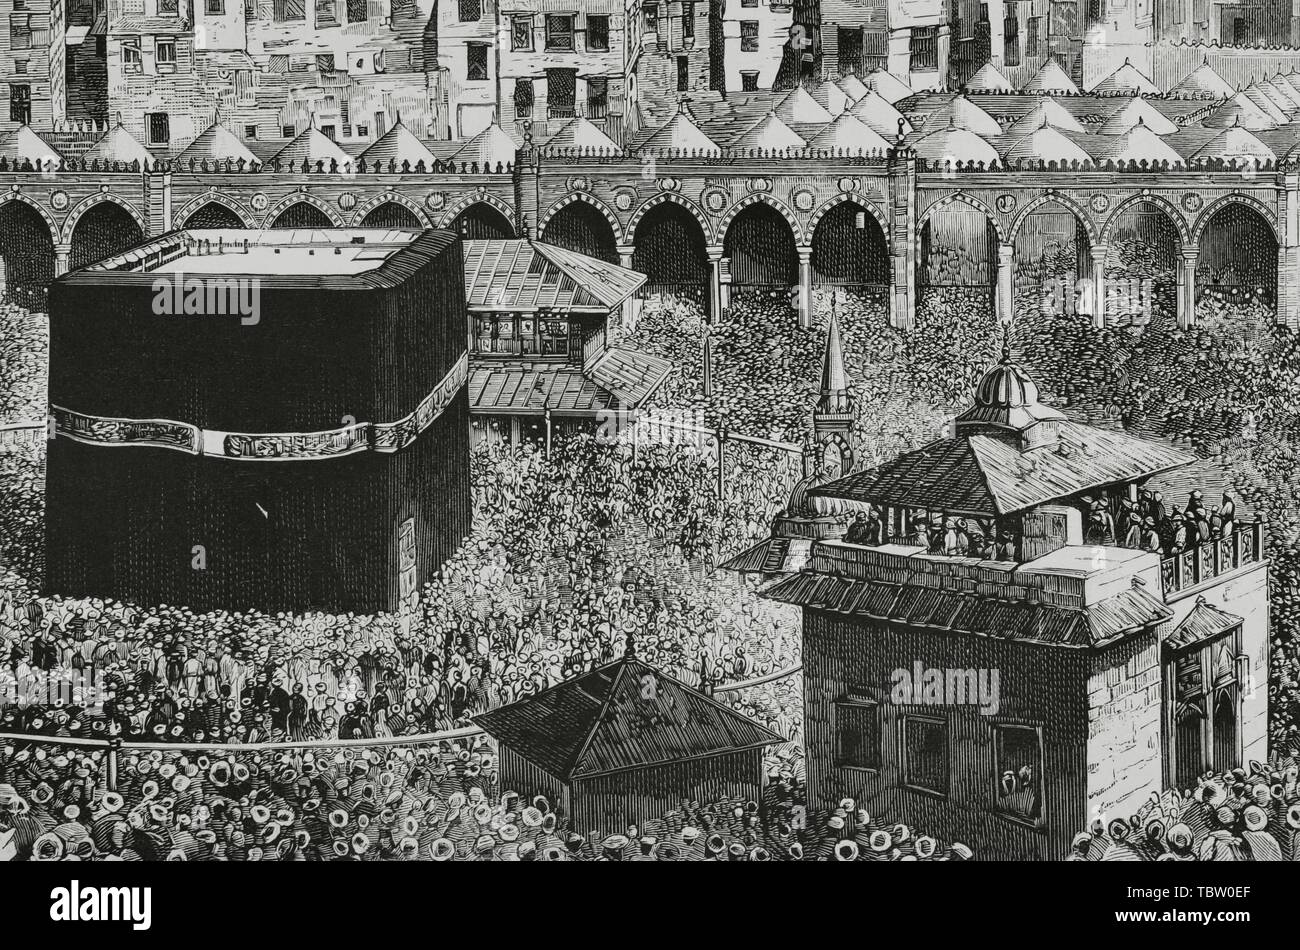 Arabia Saudí. La Meca. Vista del patio central de la mezquita Masjid al-Haram, donde se encuentra la Kaaba, que alberga la "piedra negra". Grabado de La Ilustración española y americana, 15 de abril de 1882. Detalle. Foto de stock